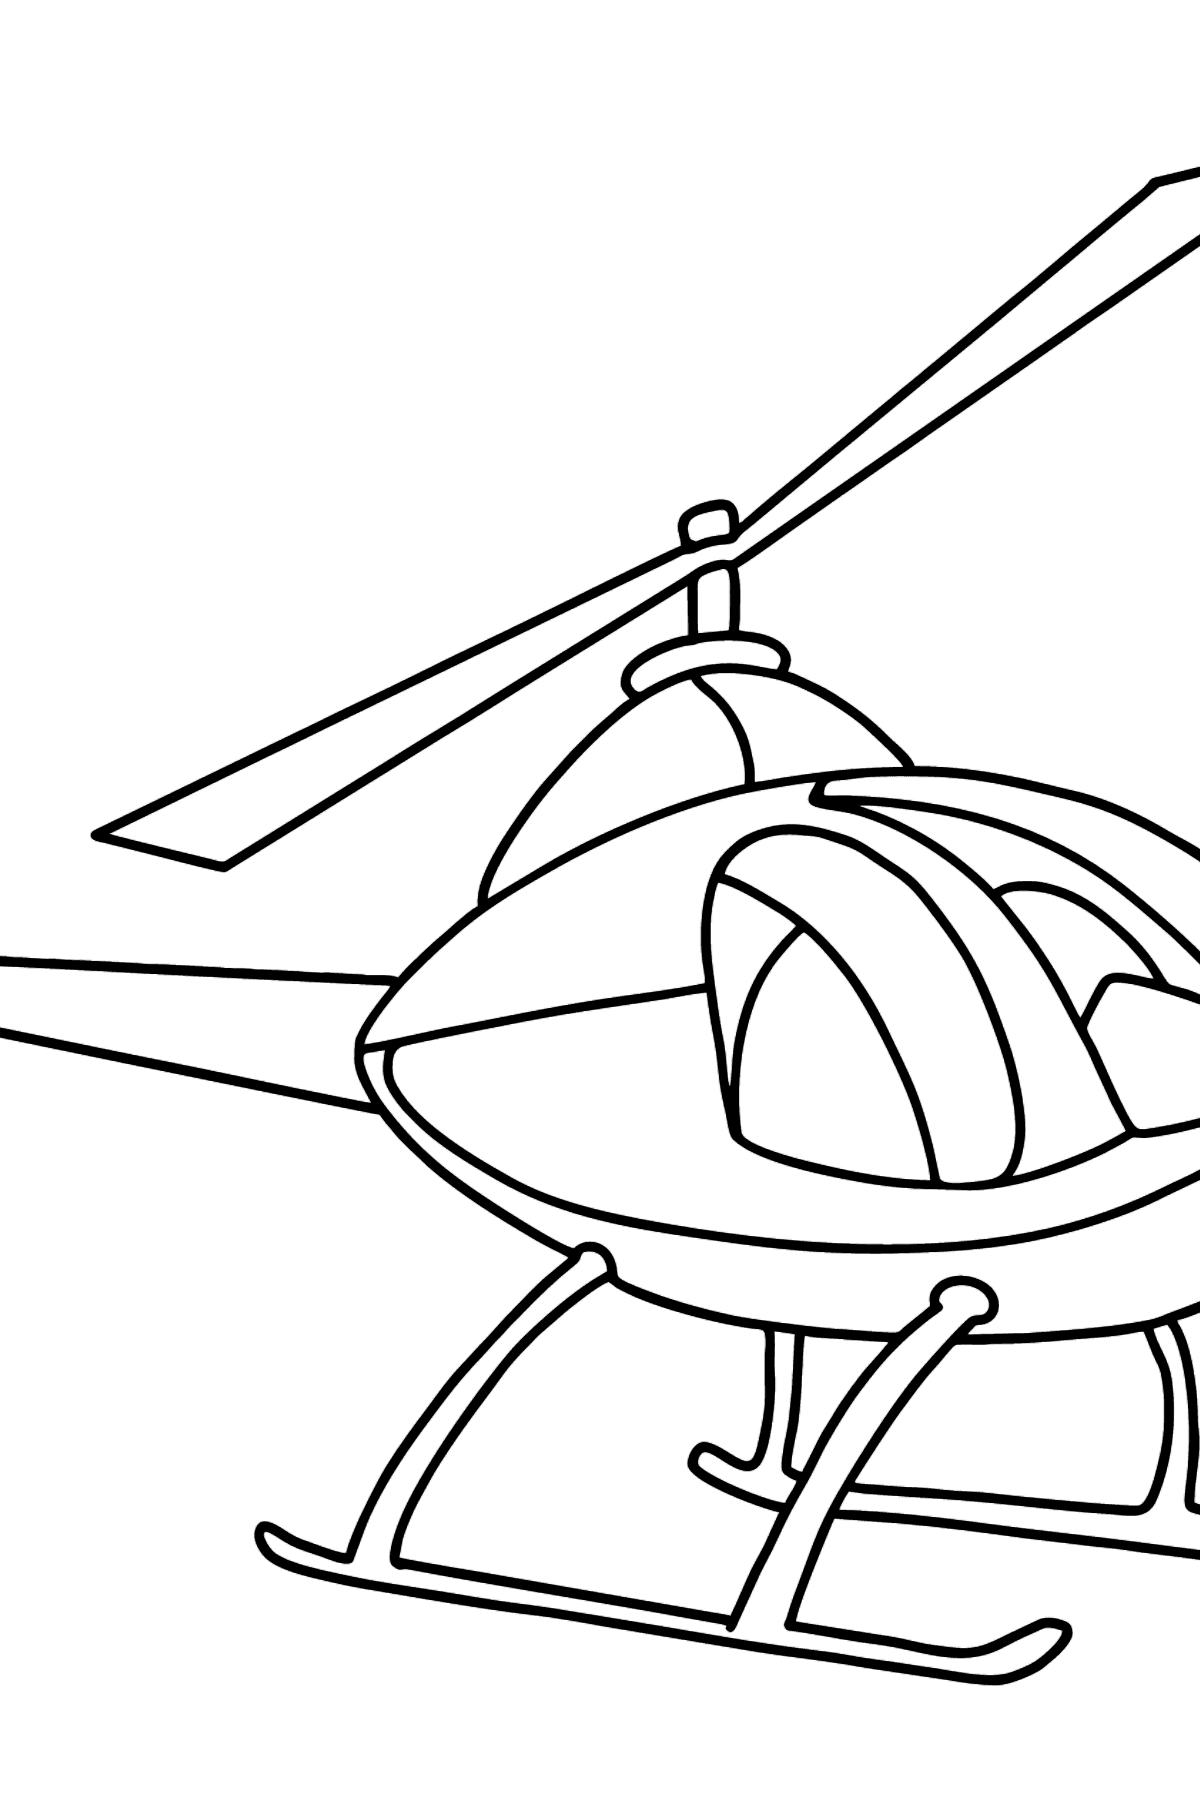 Hubschrauber Ausmalbild für Kinder - Malvorlagen für Kinder